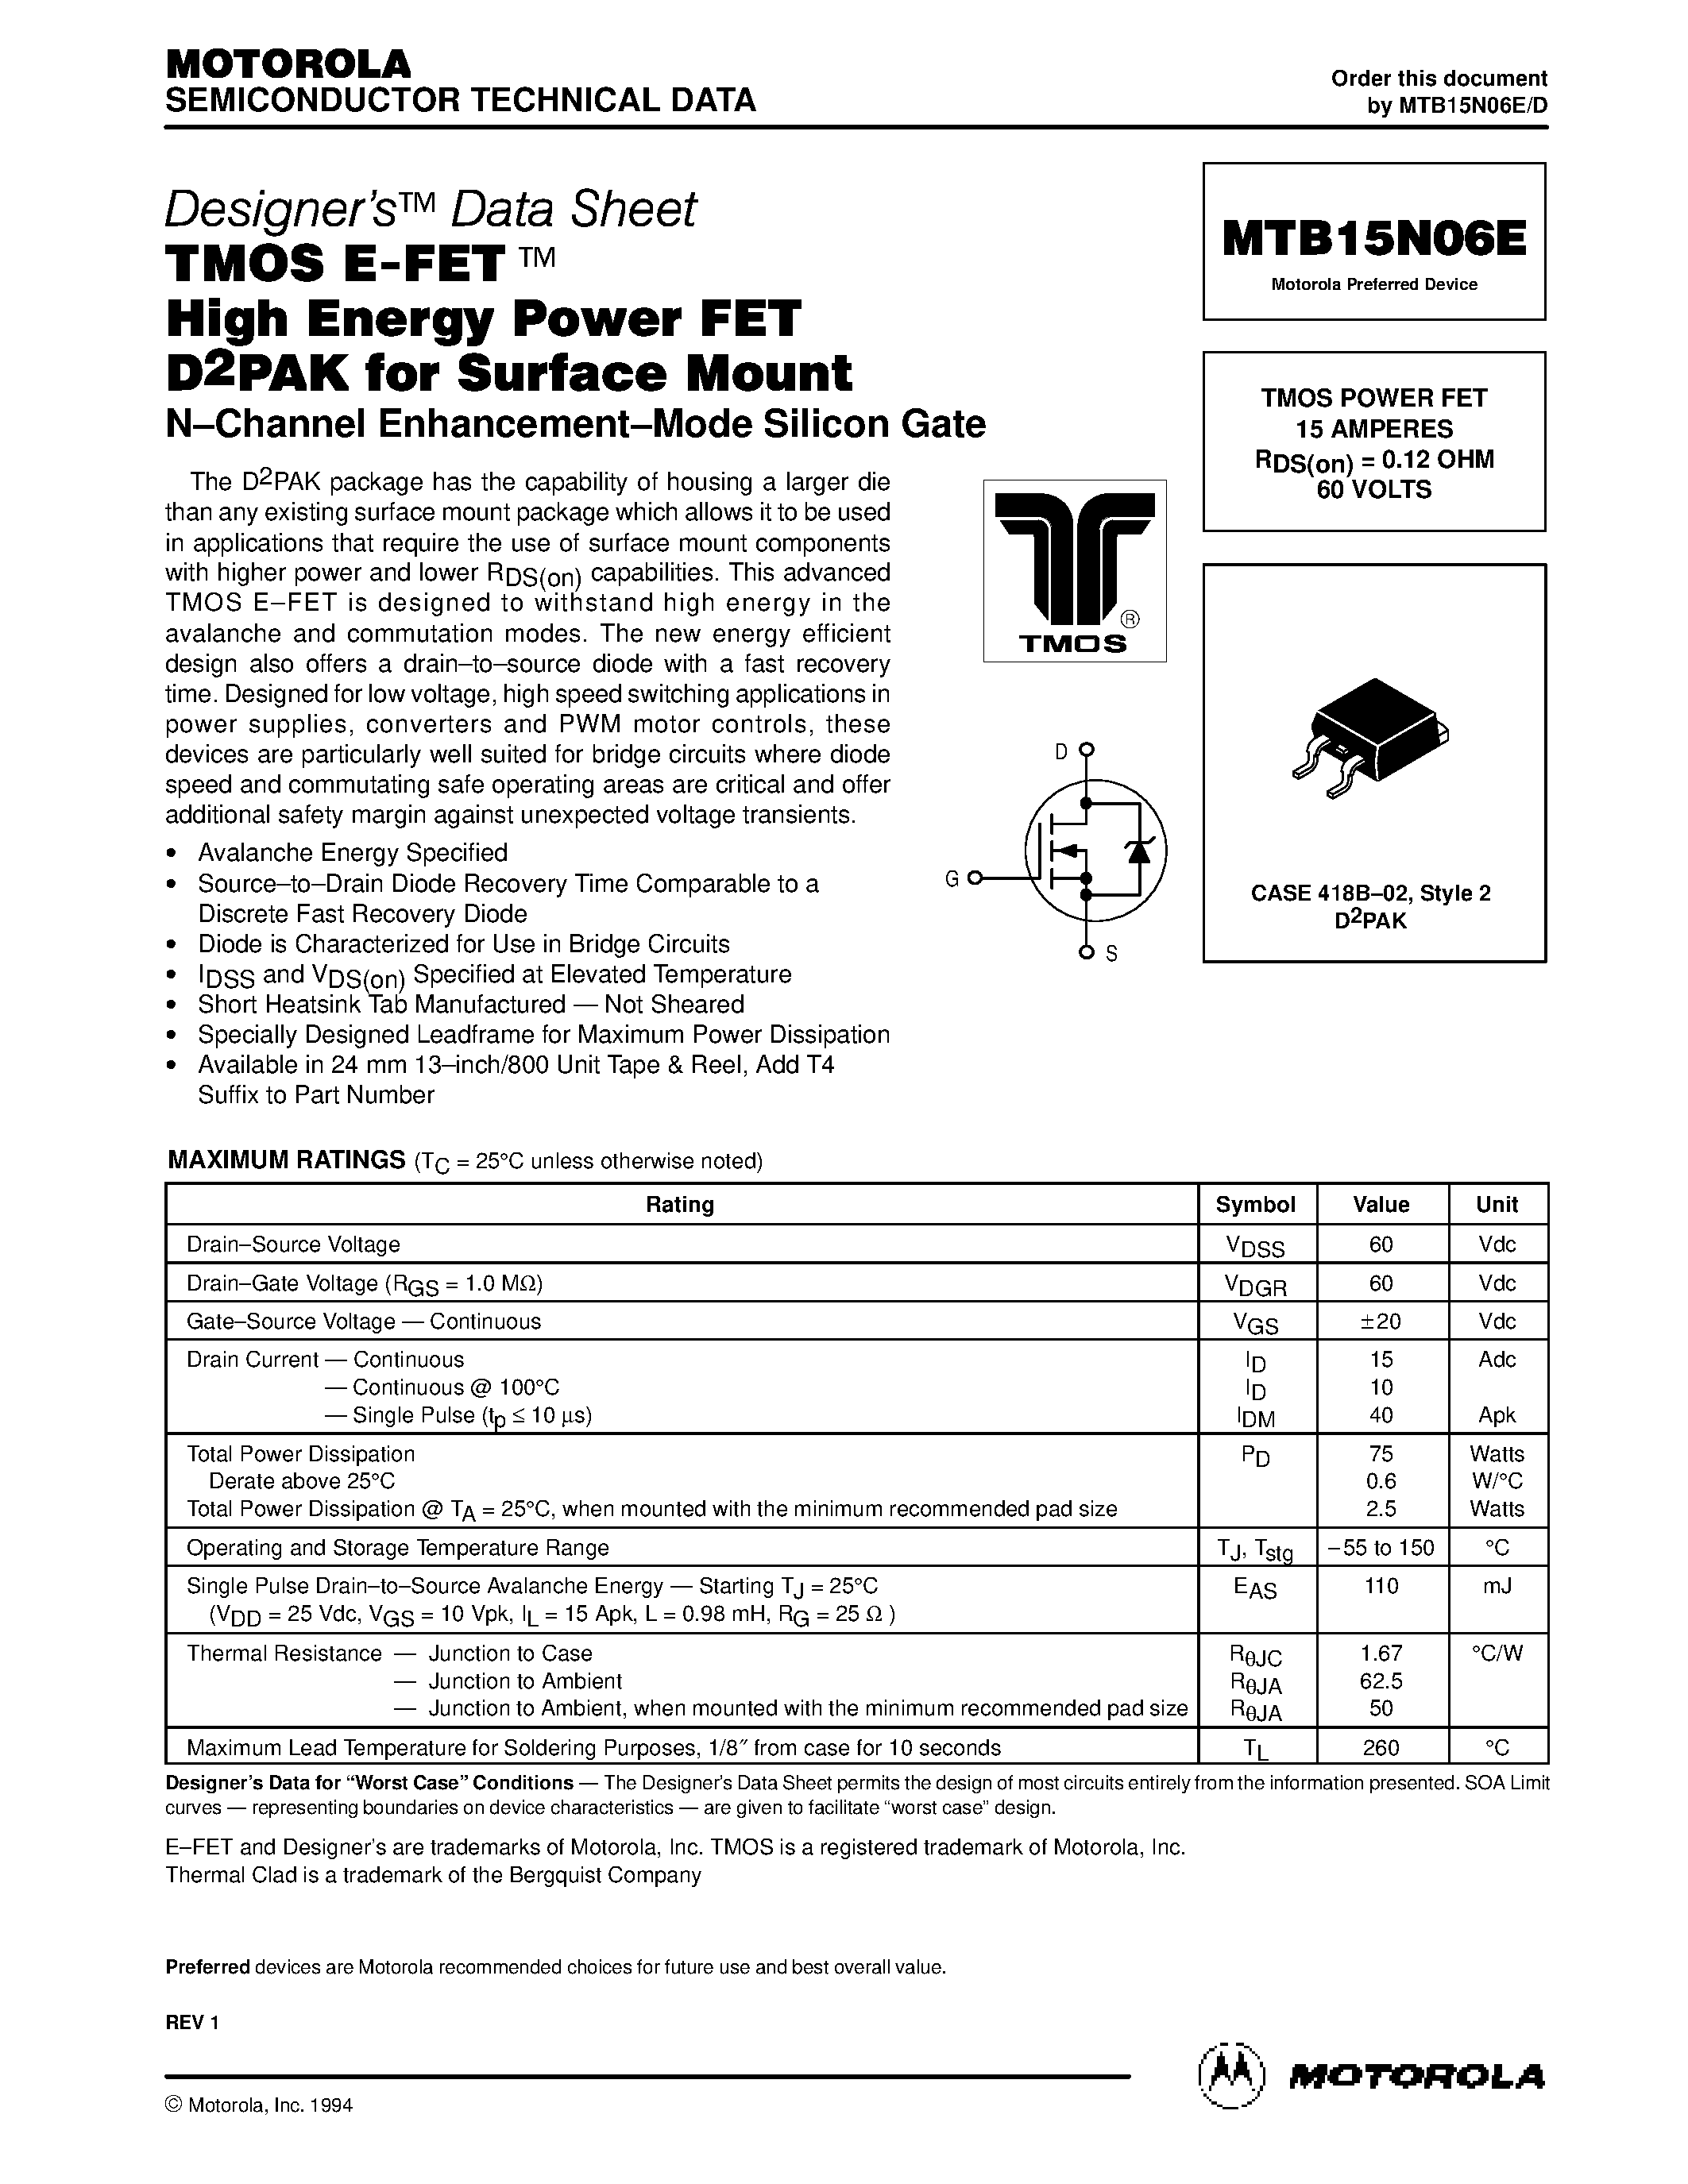 Даташит MTB15N06E - TMOS POWER FET 15 AMPERES страница 1